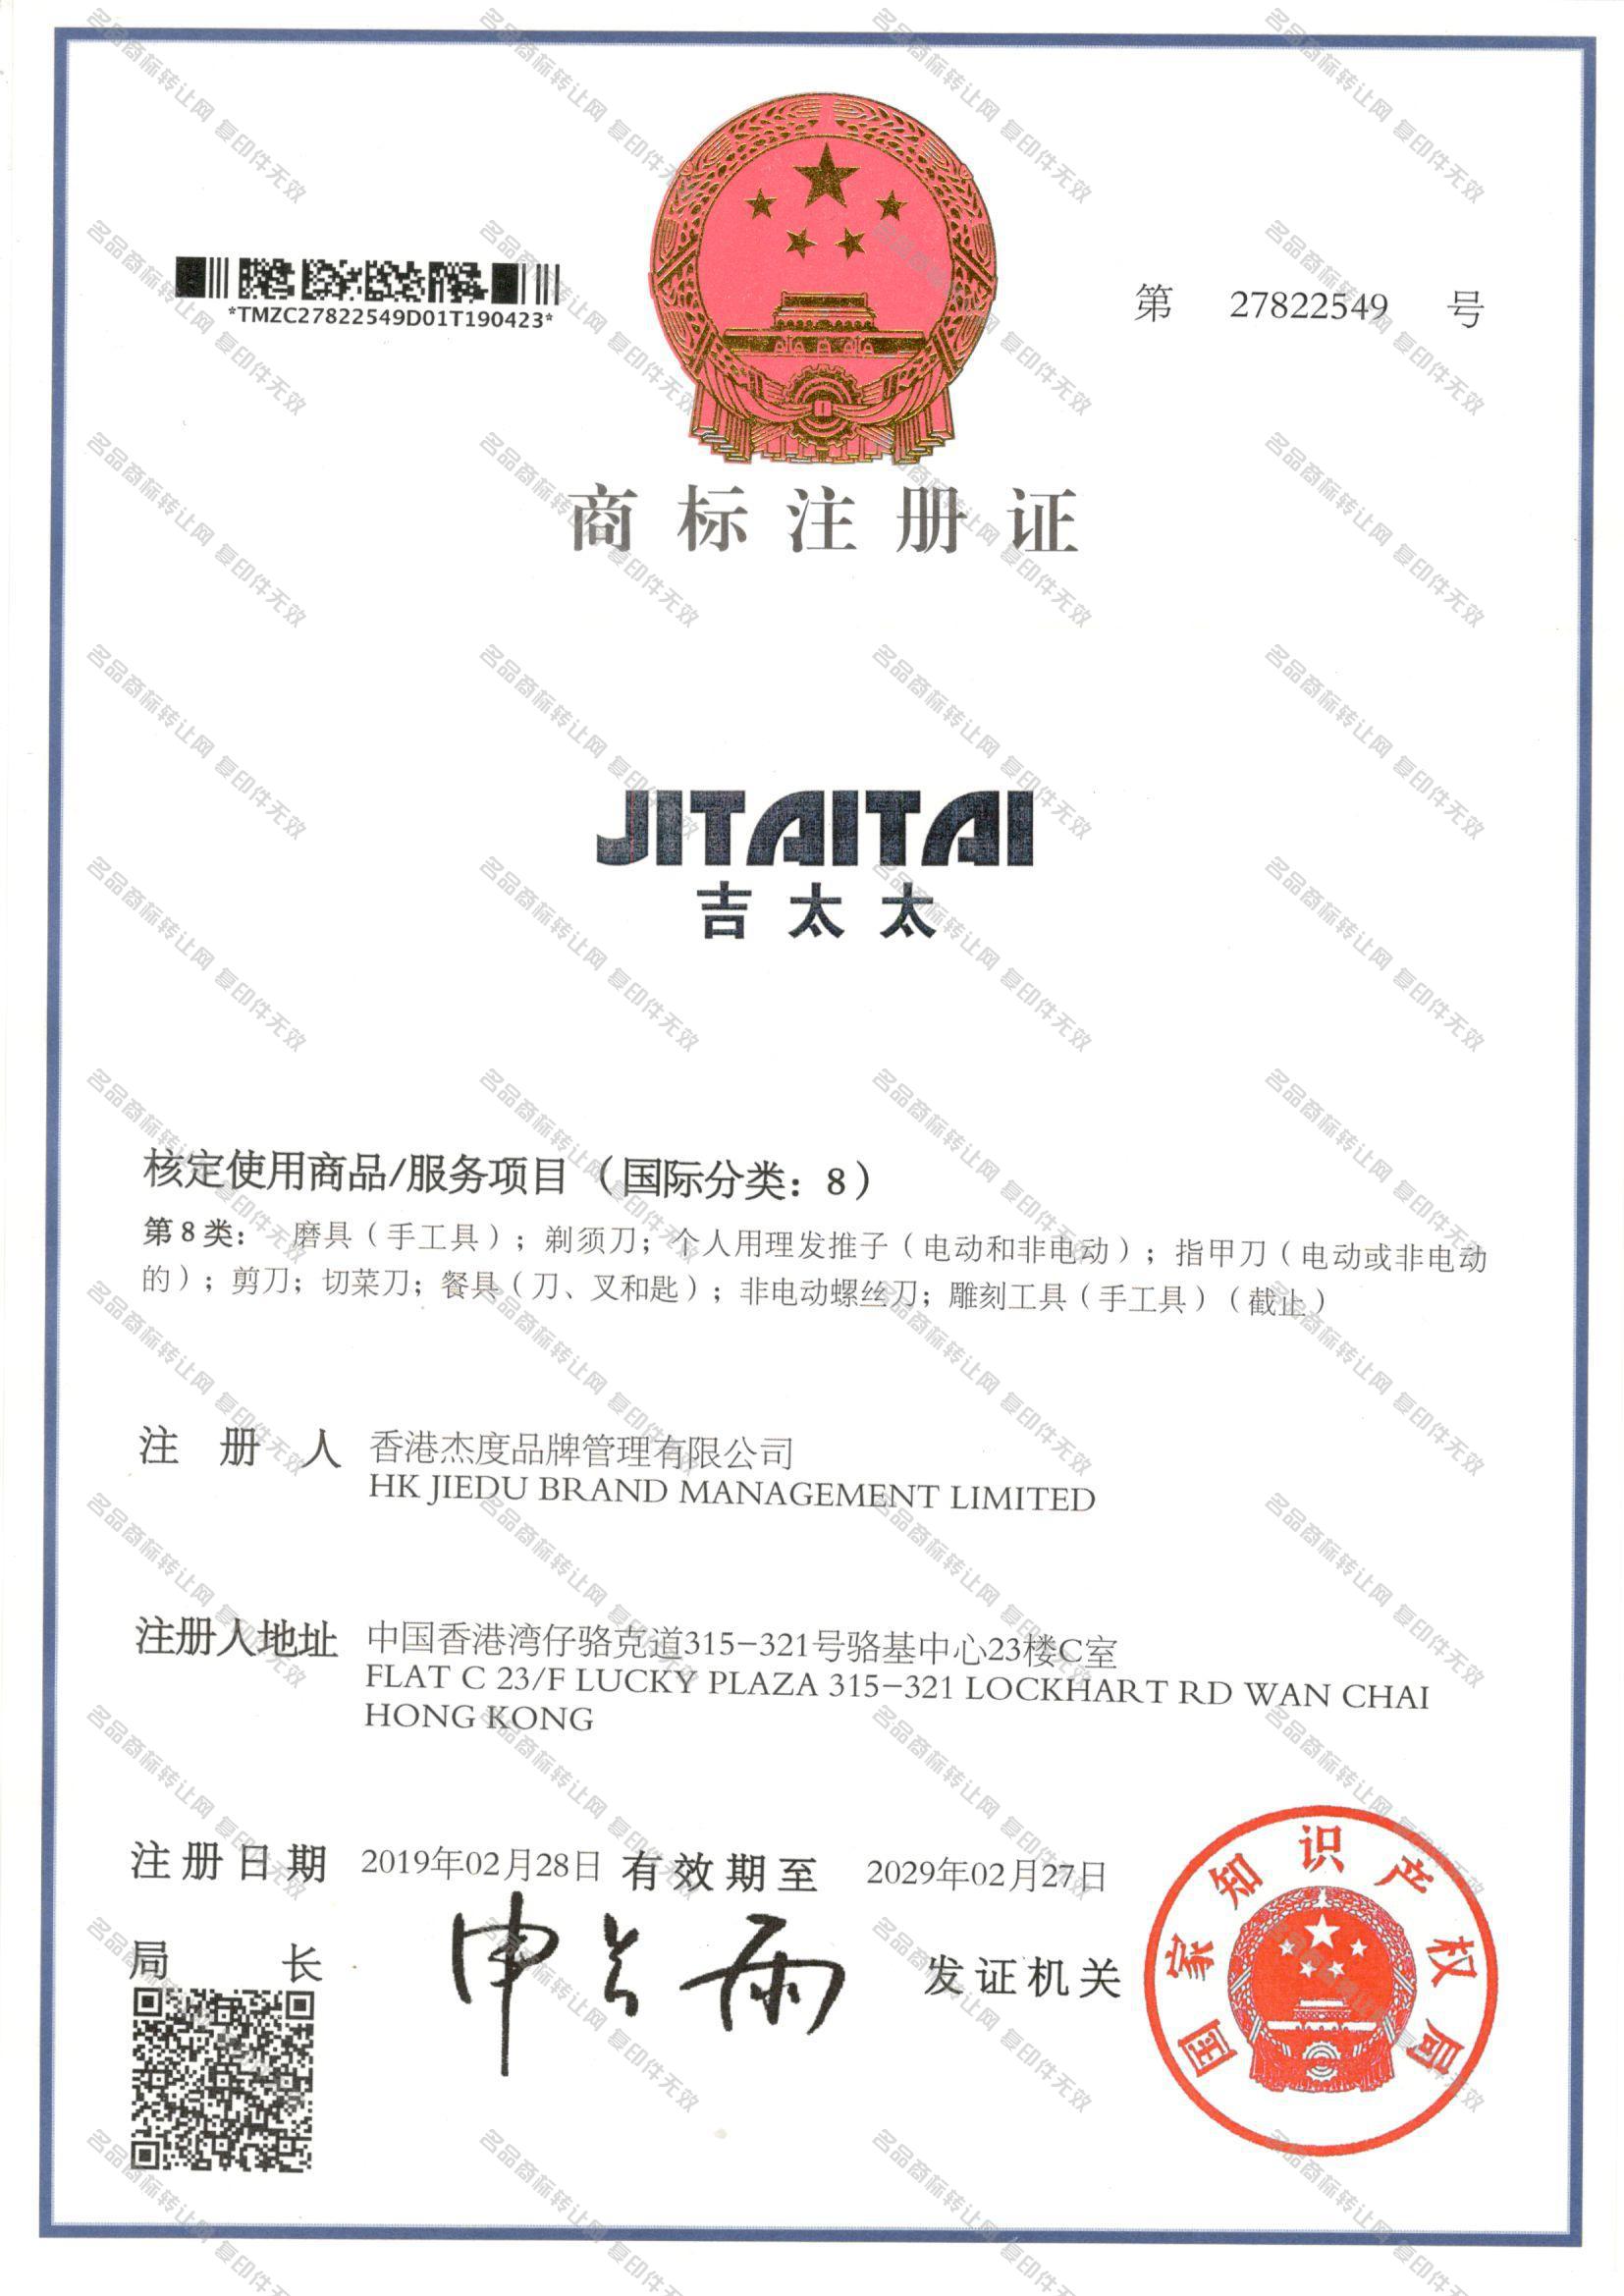 吉太太 JITAITAI注册证